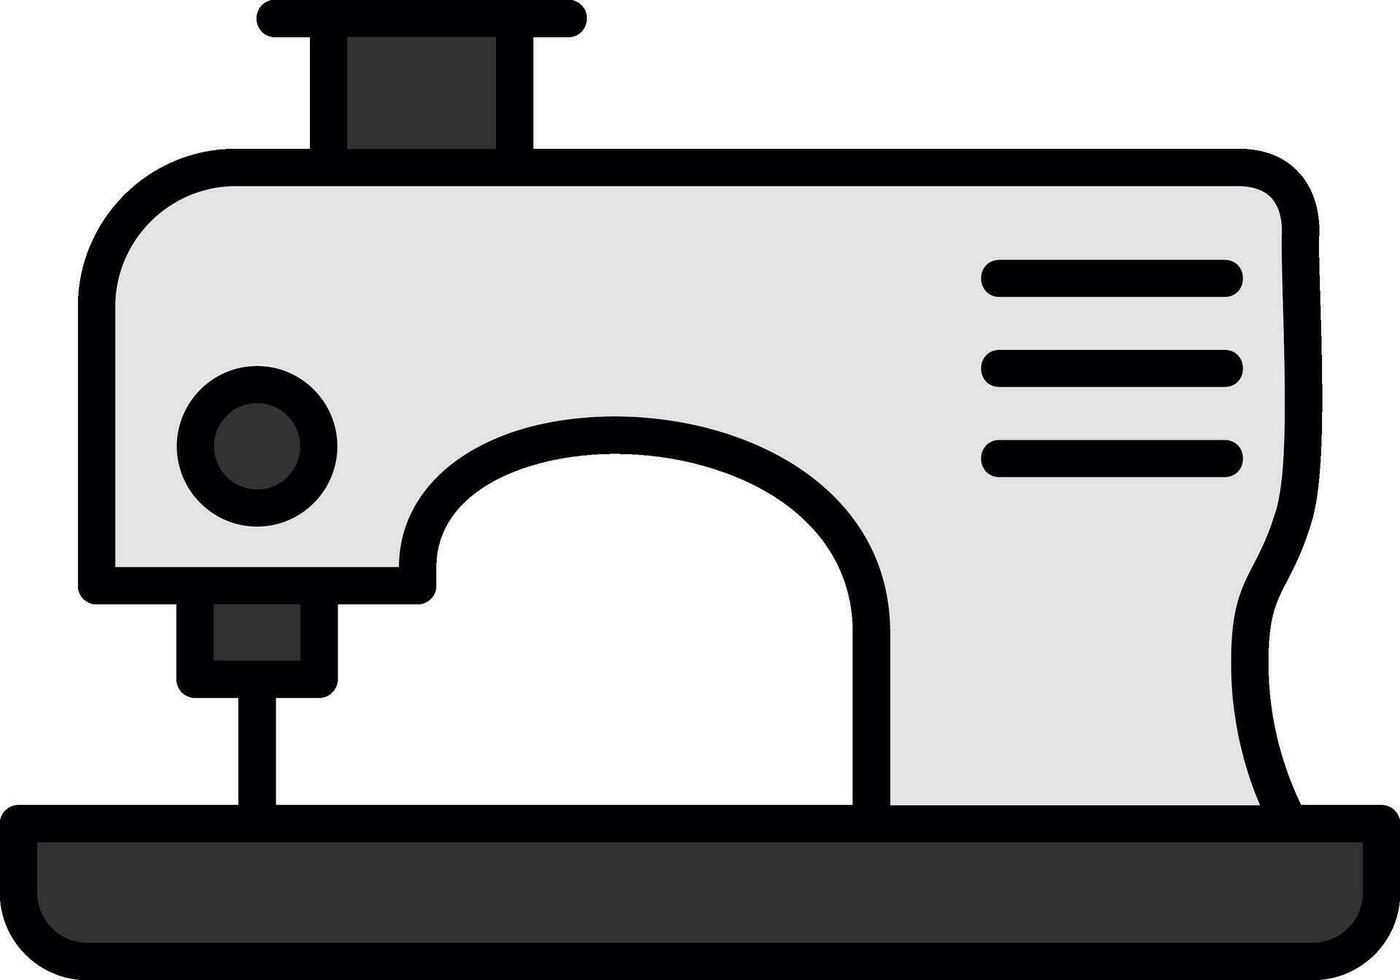 design de ícone de vetor de máquina de costura